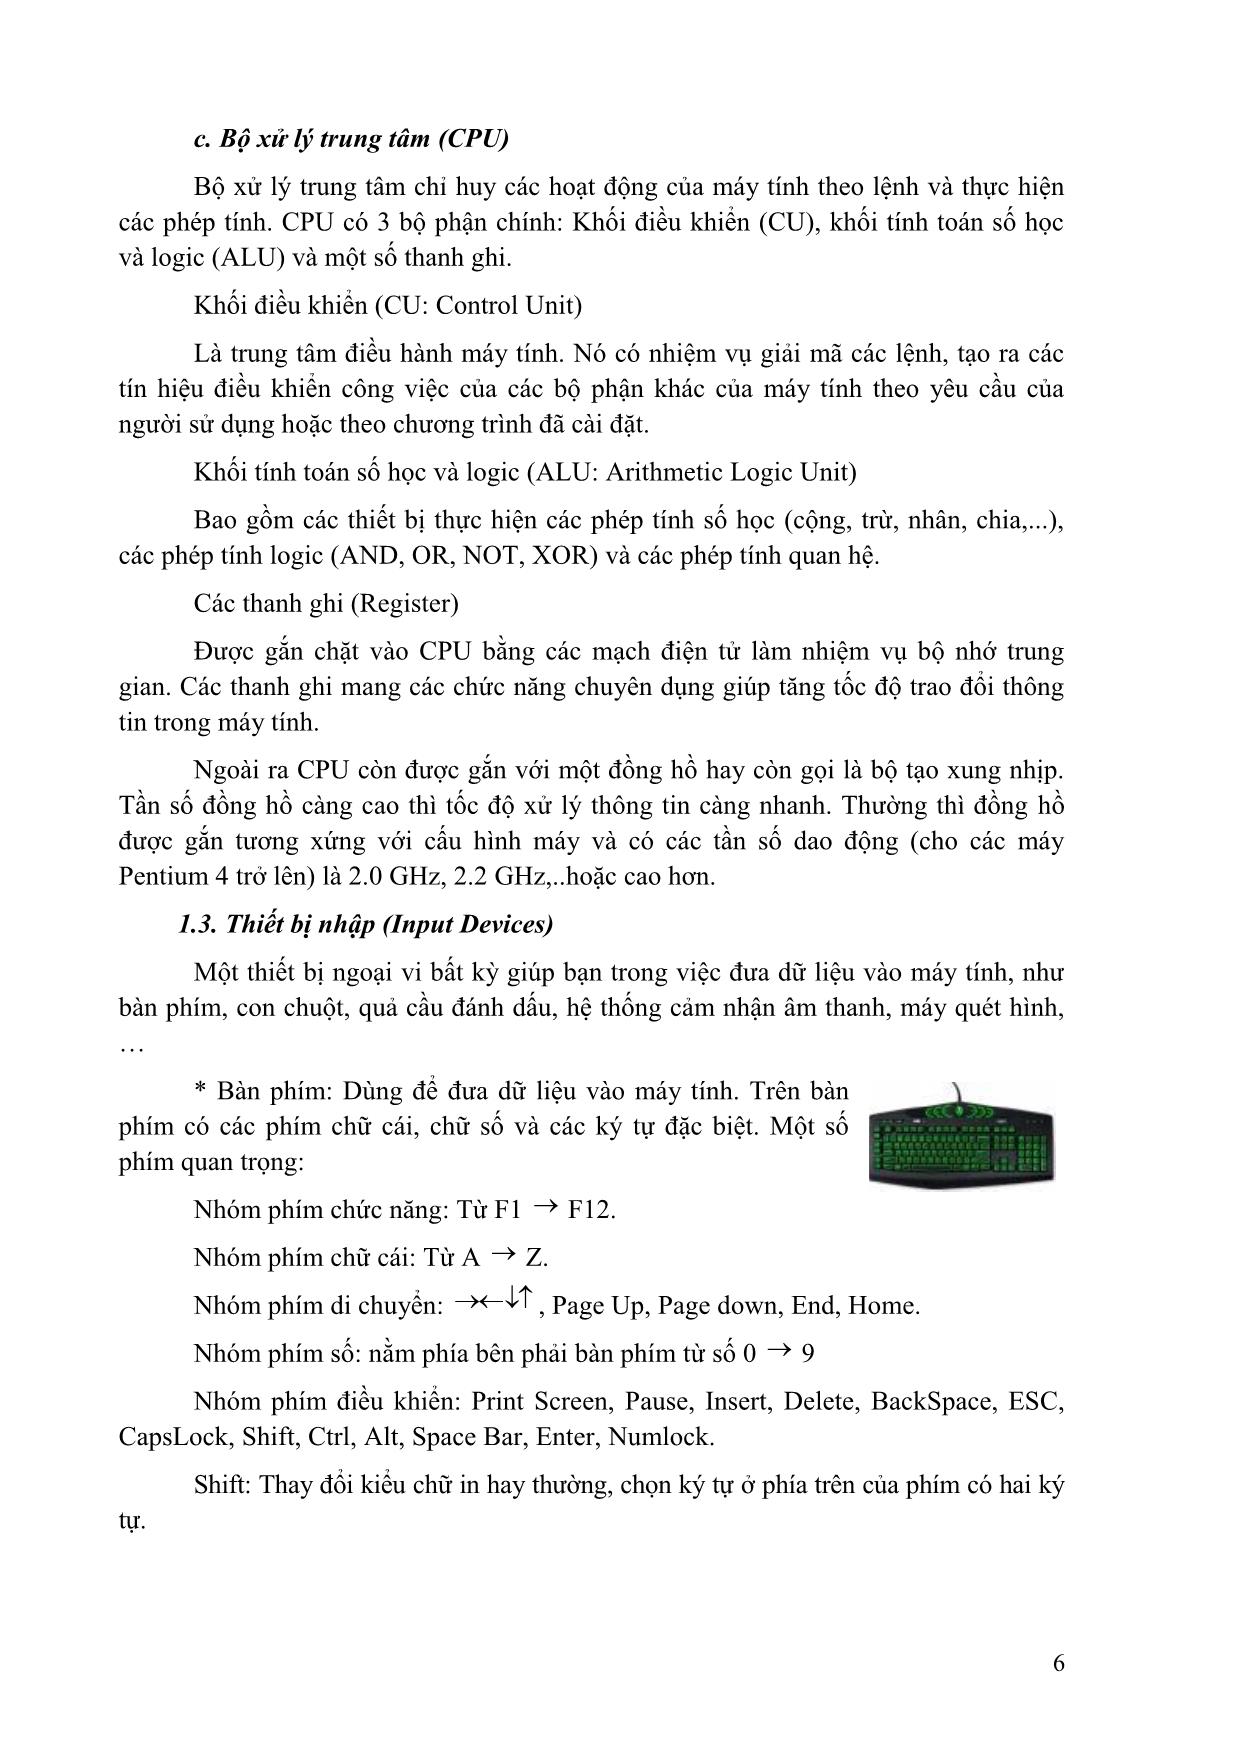 Giáo trình Tin học đại cương (Phần 1) trang 6